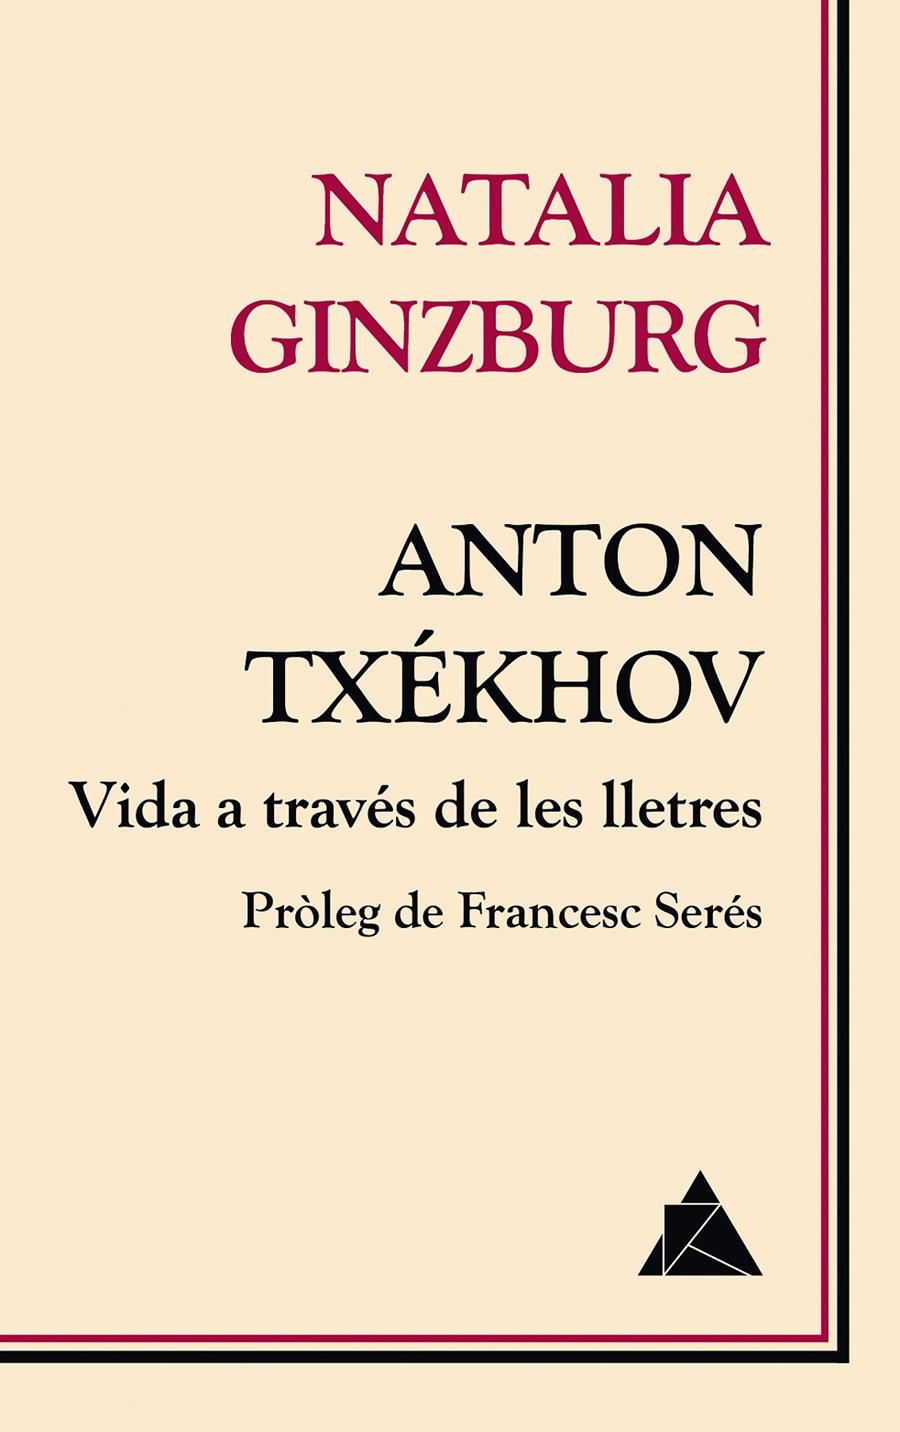 Anton Txékhov. Vida a través de les lletres | Ginzburg, Natalia | Cooperativa autogestionària